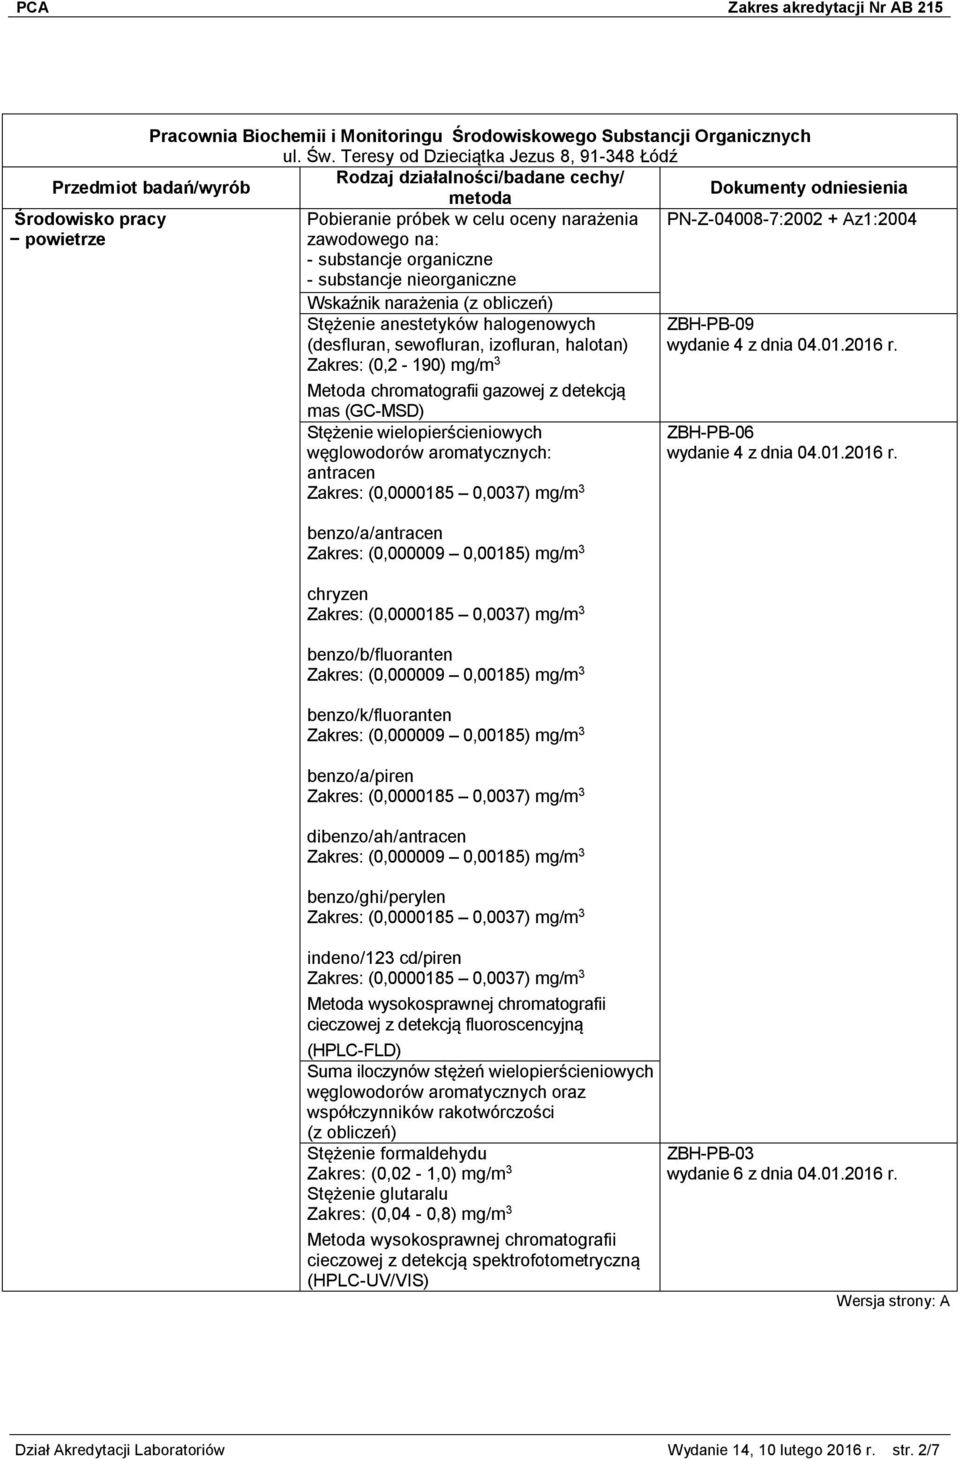 PN-Z-04008-7:2002 + Az1:2004 Wskaźnik narażenia (z obliczeń) Stężenie anestetyków halogenowych (desfluran, sewofluran, izofluran, halotan) Zakres: (0,2-190) mg/m 3 z detekcją mas (GC-MSD) Stężenie